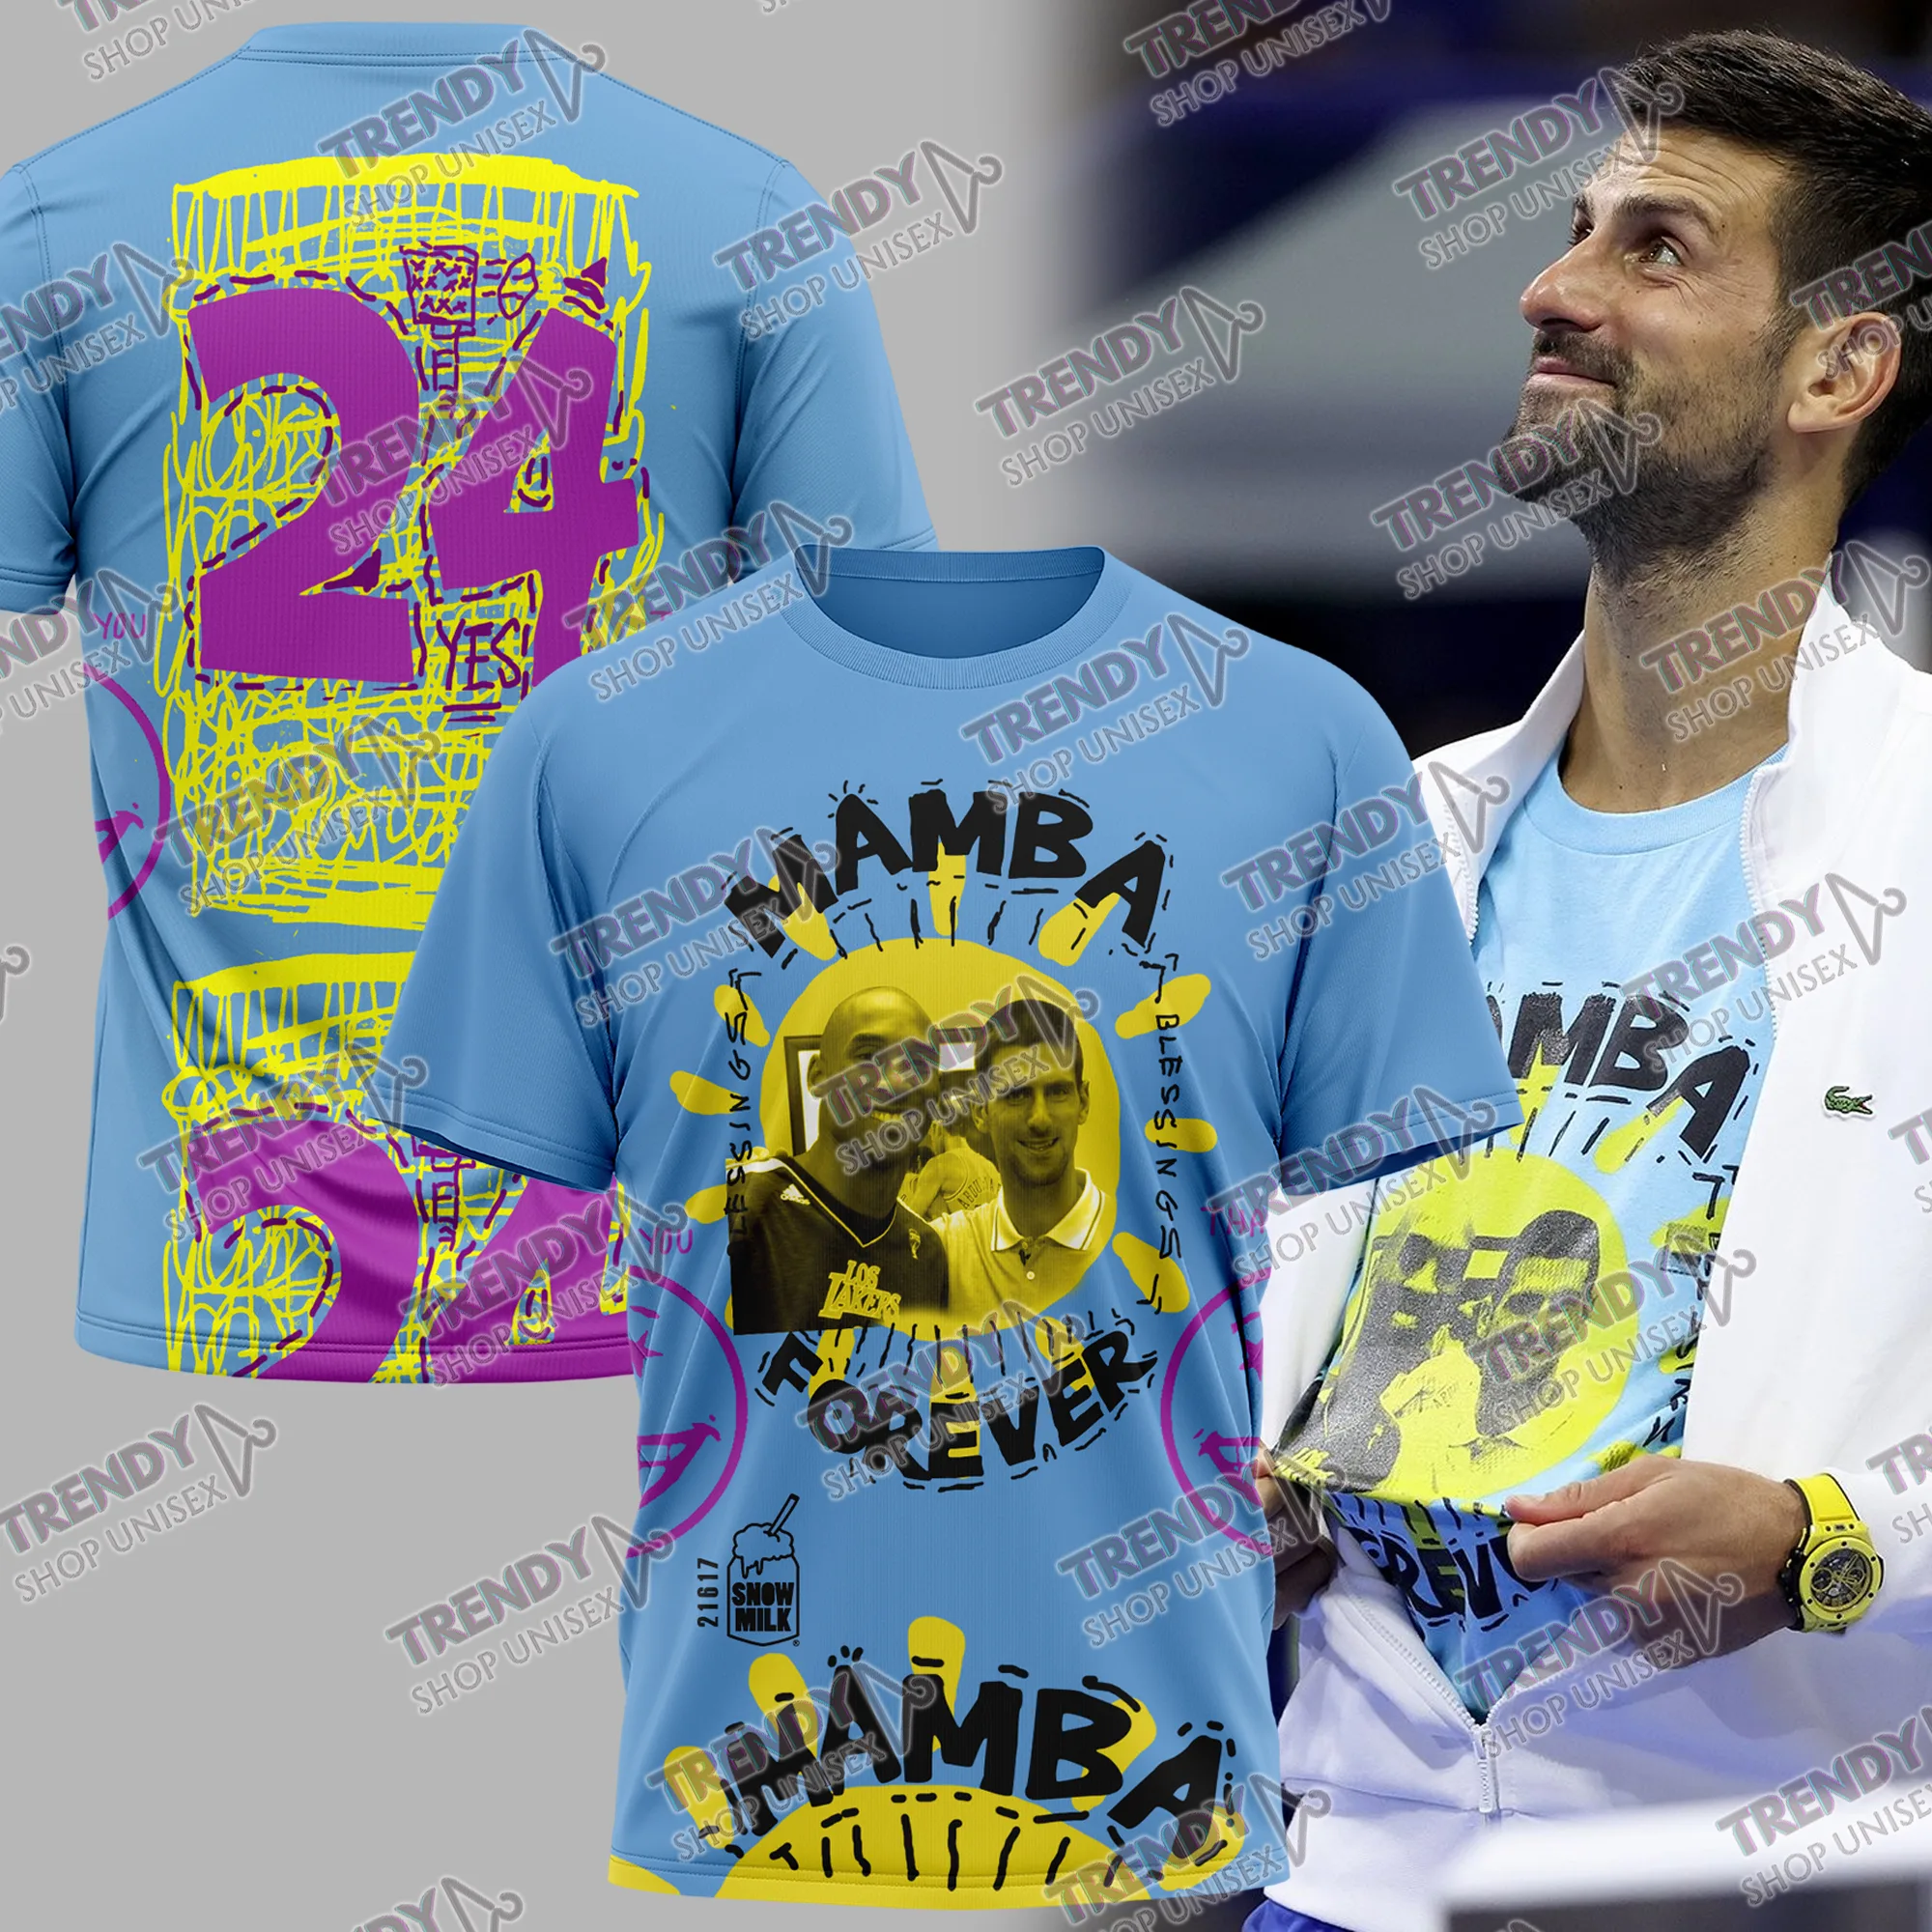 Djokovic Mamba Shirt